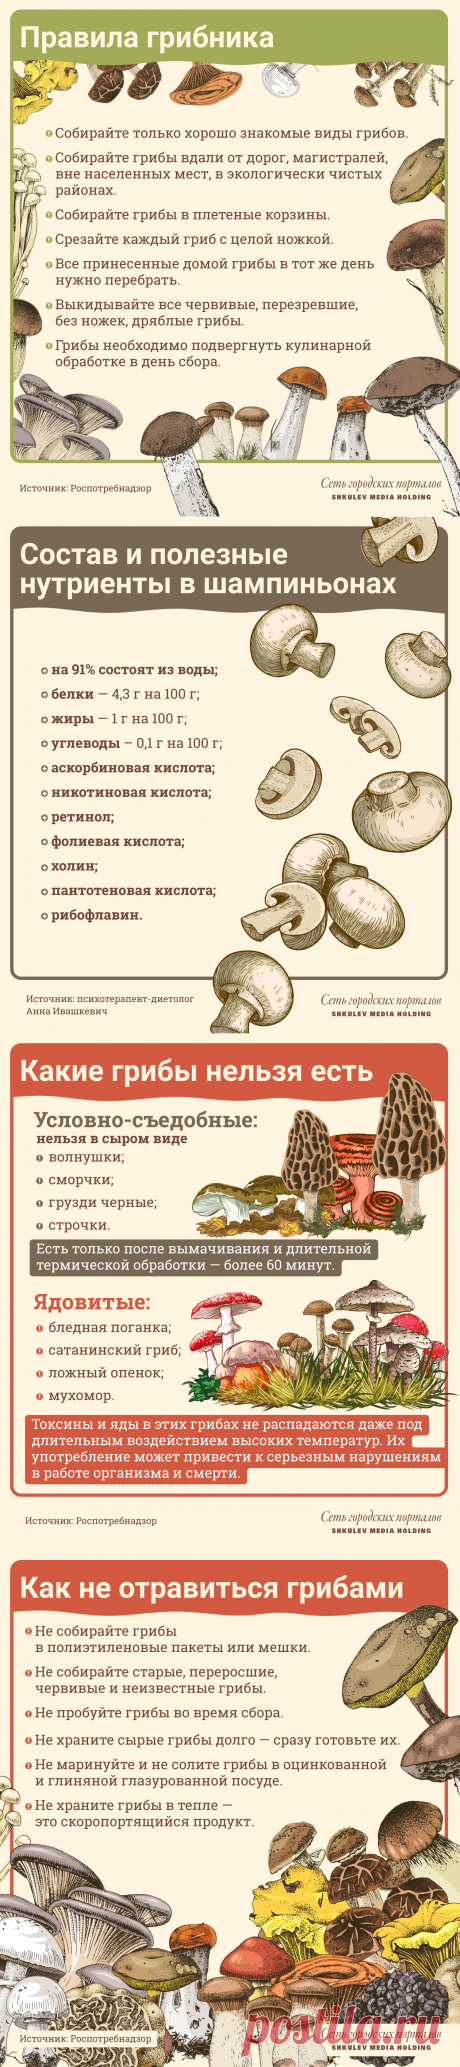 Польза и вред грибов для организма человека: какие грибы как правильно готовить для еды - Образ жизни - Новости Санкт-Петербурга - Фонтанка.Ру Гриб — орган, который может чувствовать, видеть, слышать, ощущать вкус, выделять энзимы и гормоны, то есть участвовать в процессах в организме.
Грибы обладают способностью к движению.
Они способны передвигаться в почве, воде.